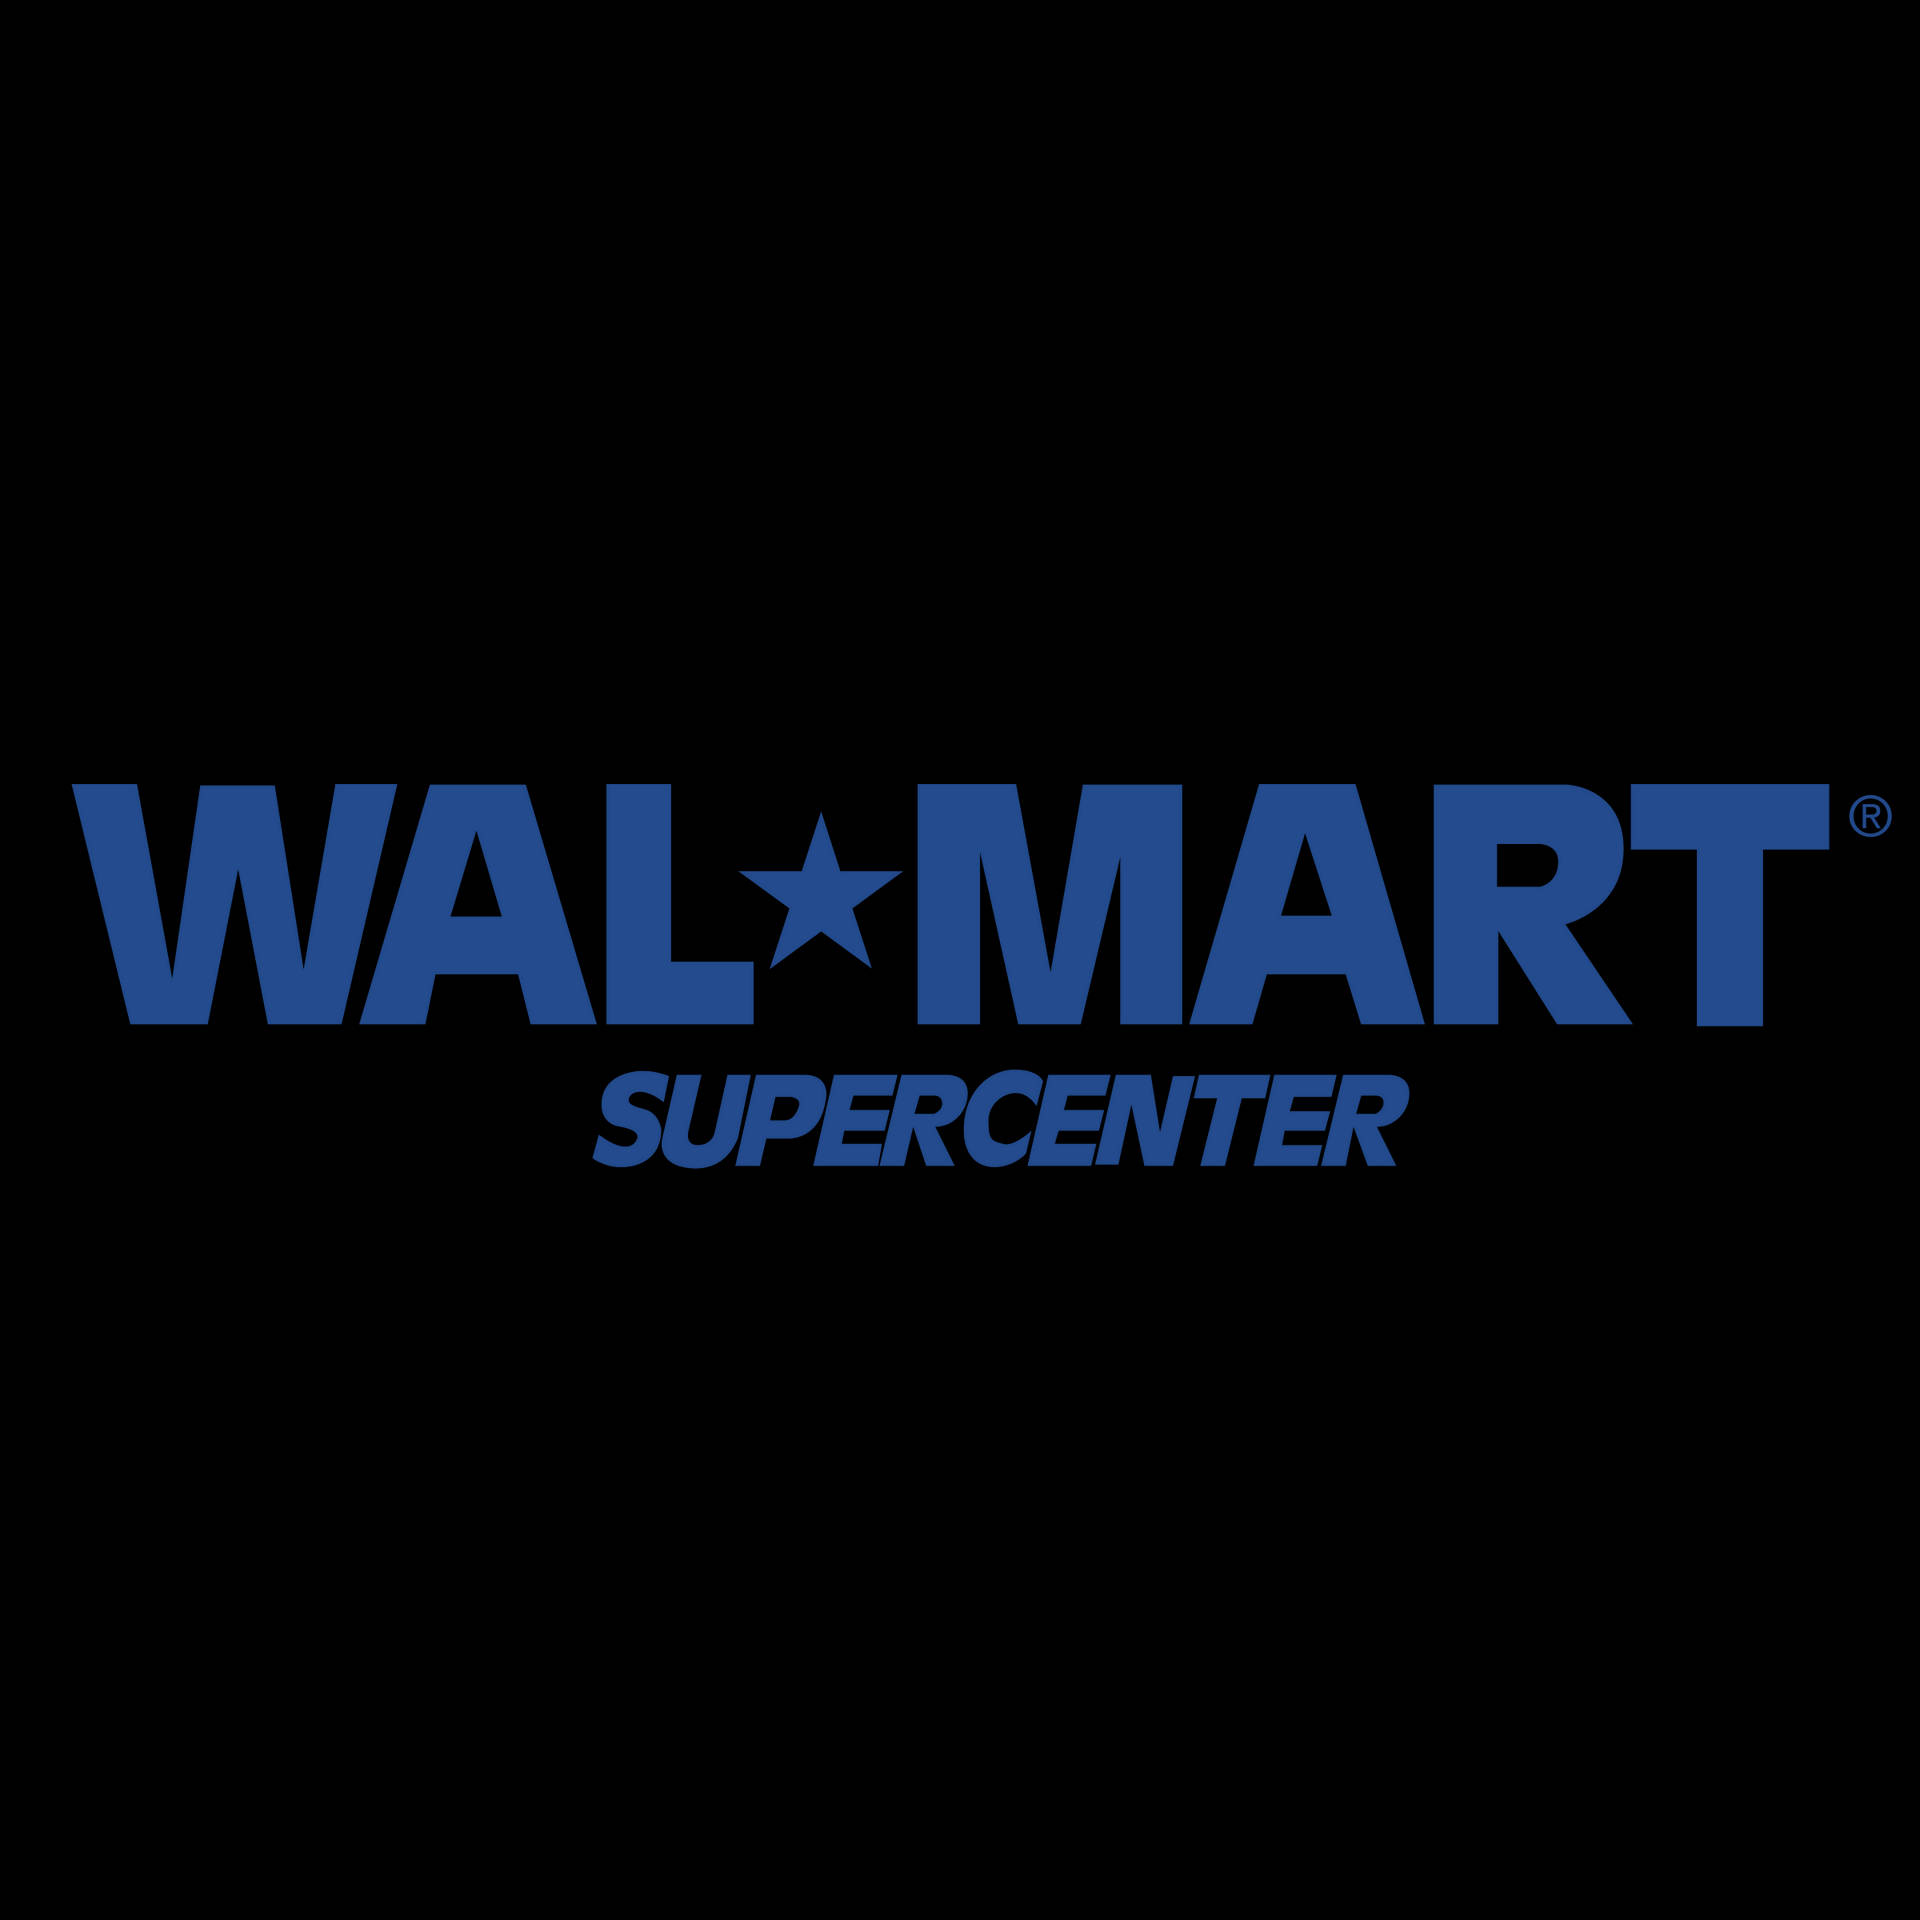 [100+] Walmart Wallpapers | Wallpapers.com